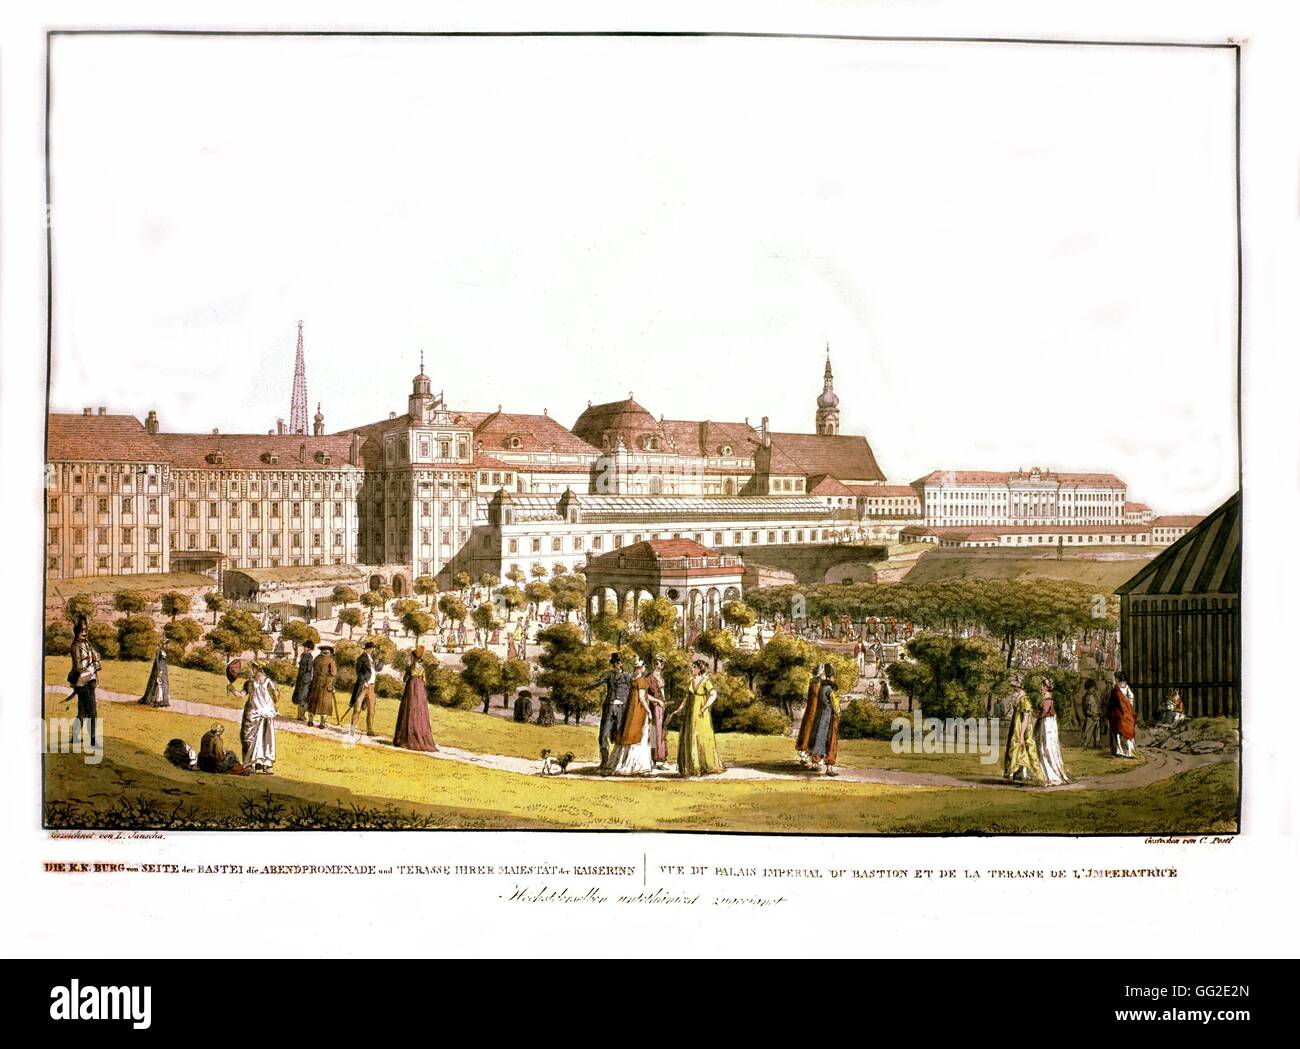 Litografía anónima de Viena, Vista del palacio imperial del siglo XIX, el museo histórico de Viena Austria Foto de stock